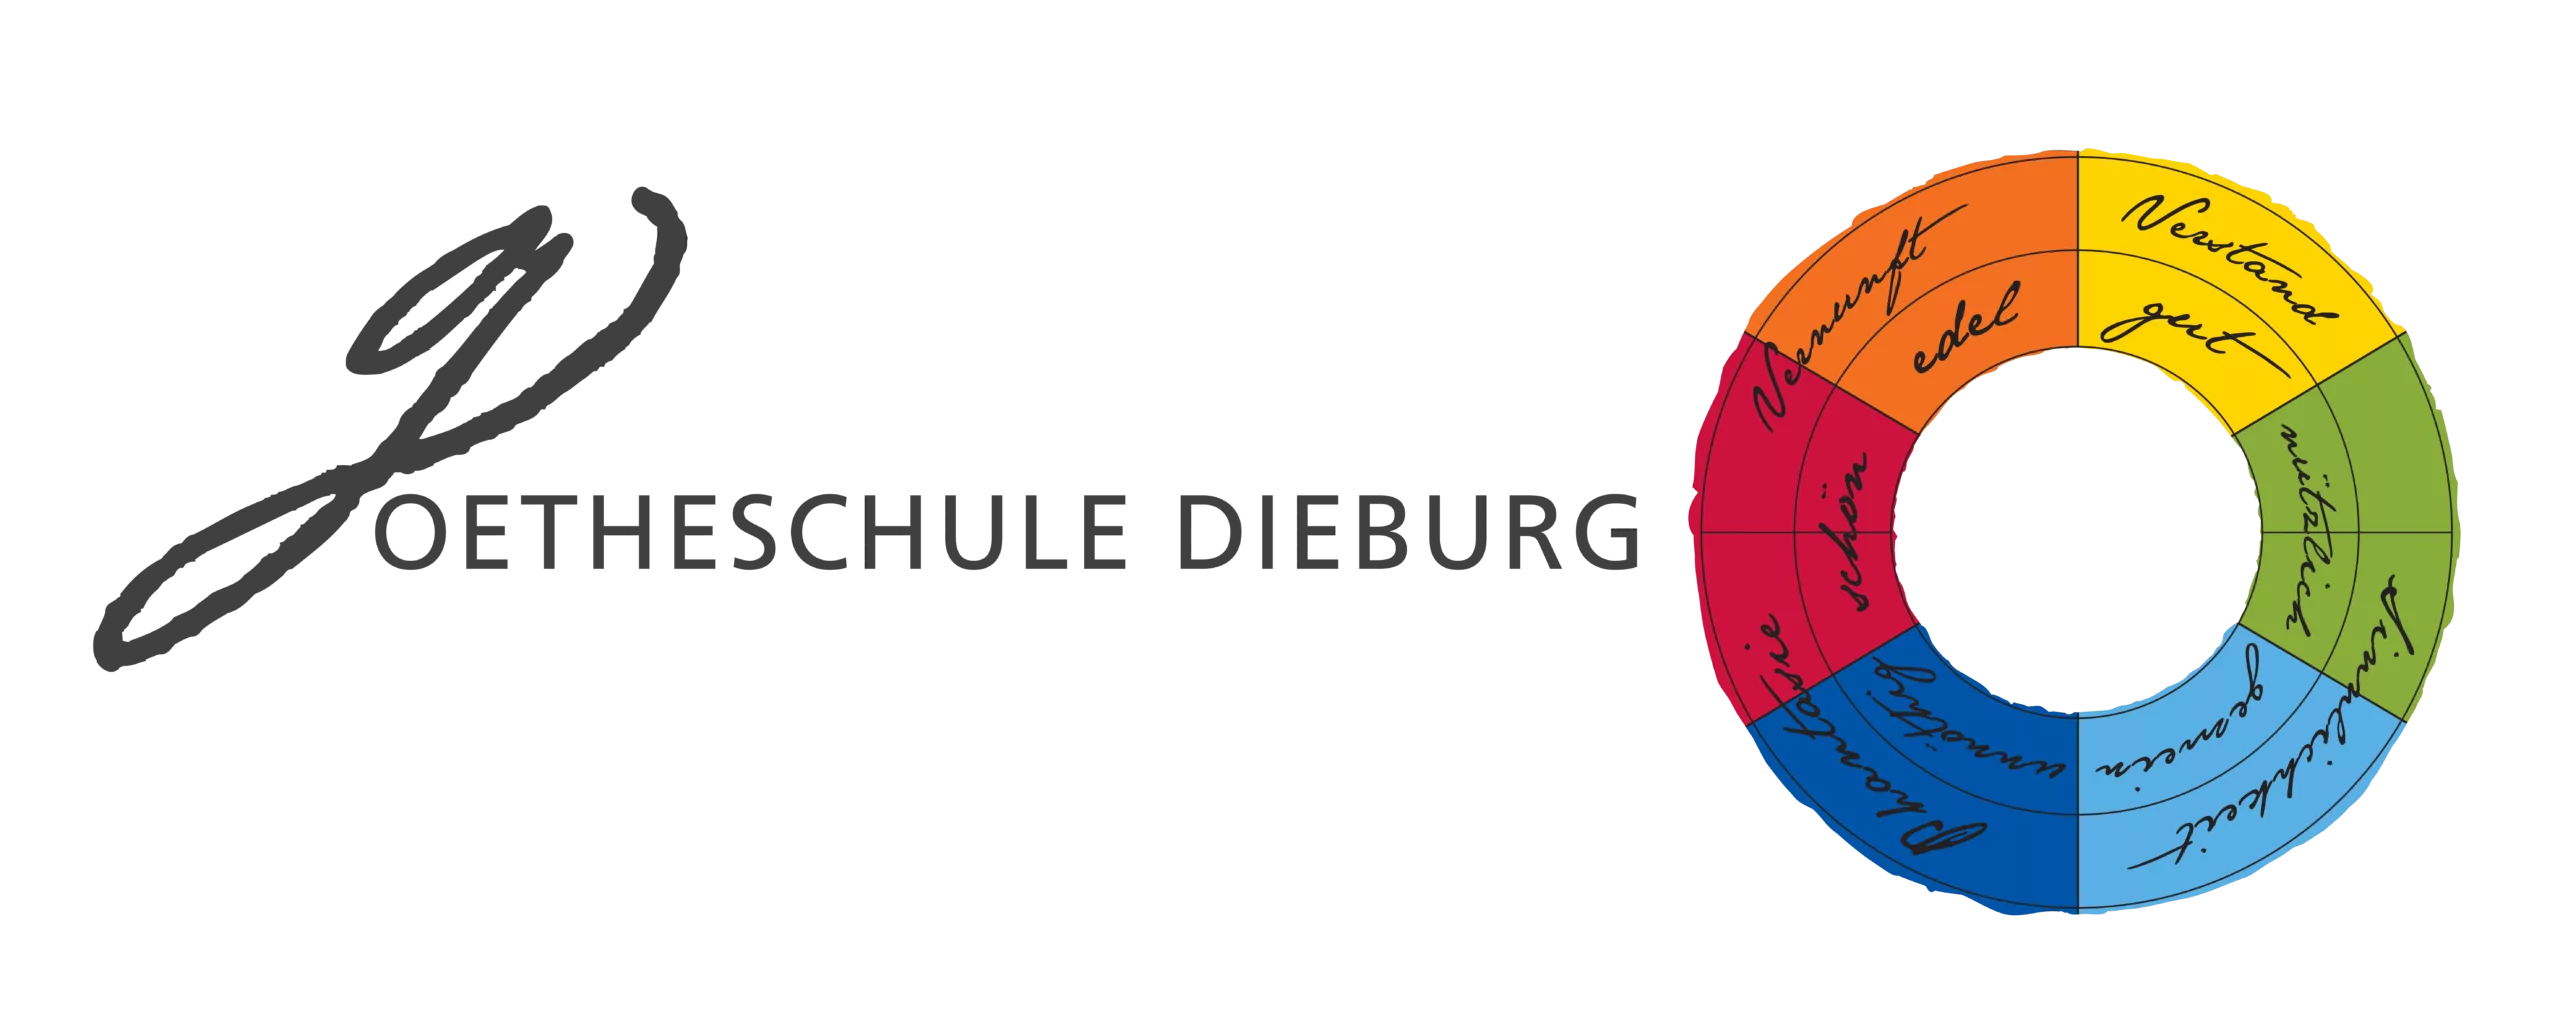 Logo Goetheschule Dieburg mit schwarzer Schrift